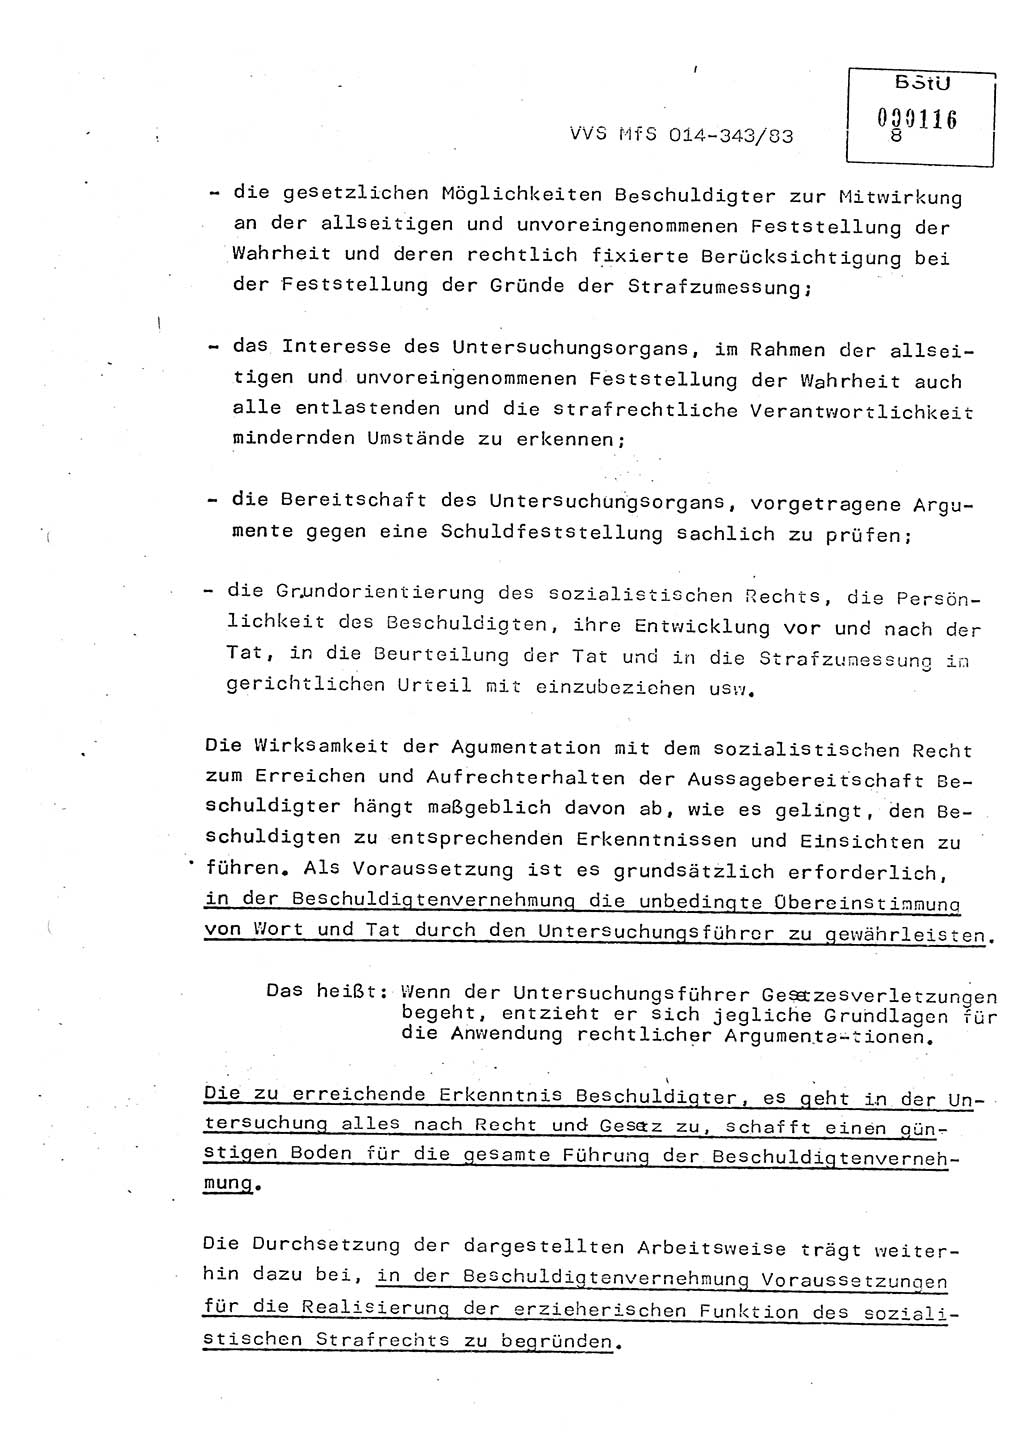 Lektion Ministerium für Staatssicherheit (MfS) [Deutsche Demokratische Republik (DDR)], Hauptabteilung (HA) Ⅸ, Vertrauliche Verschlußsache (VVS) o014-343/83, Berlin 1983, Seite 8 (Lekt. MfS DDR HA Ⅸ VVS o014-343/83 1983, S. 8)